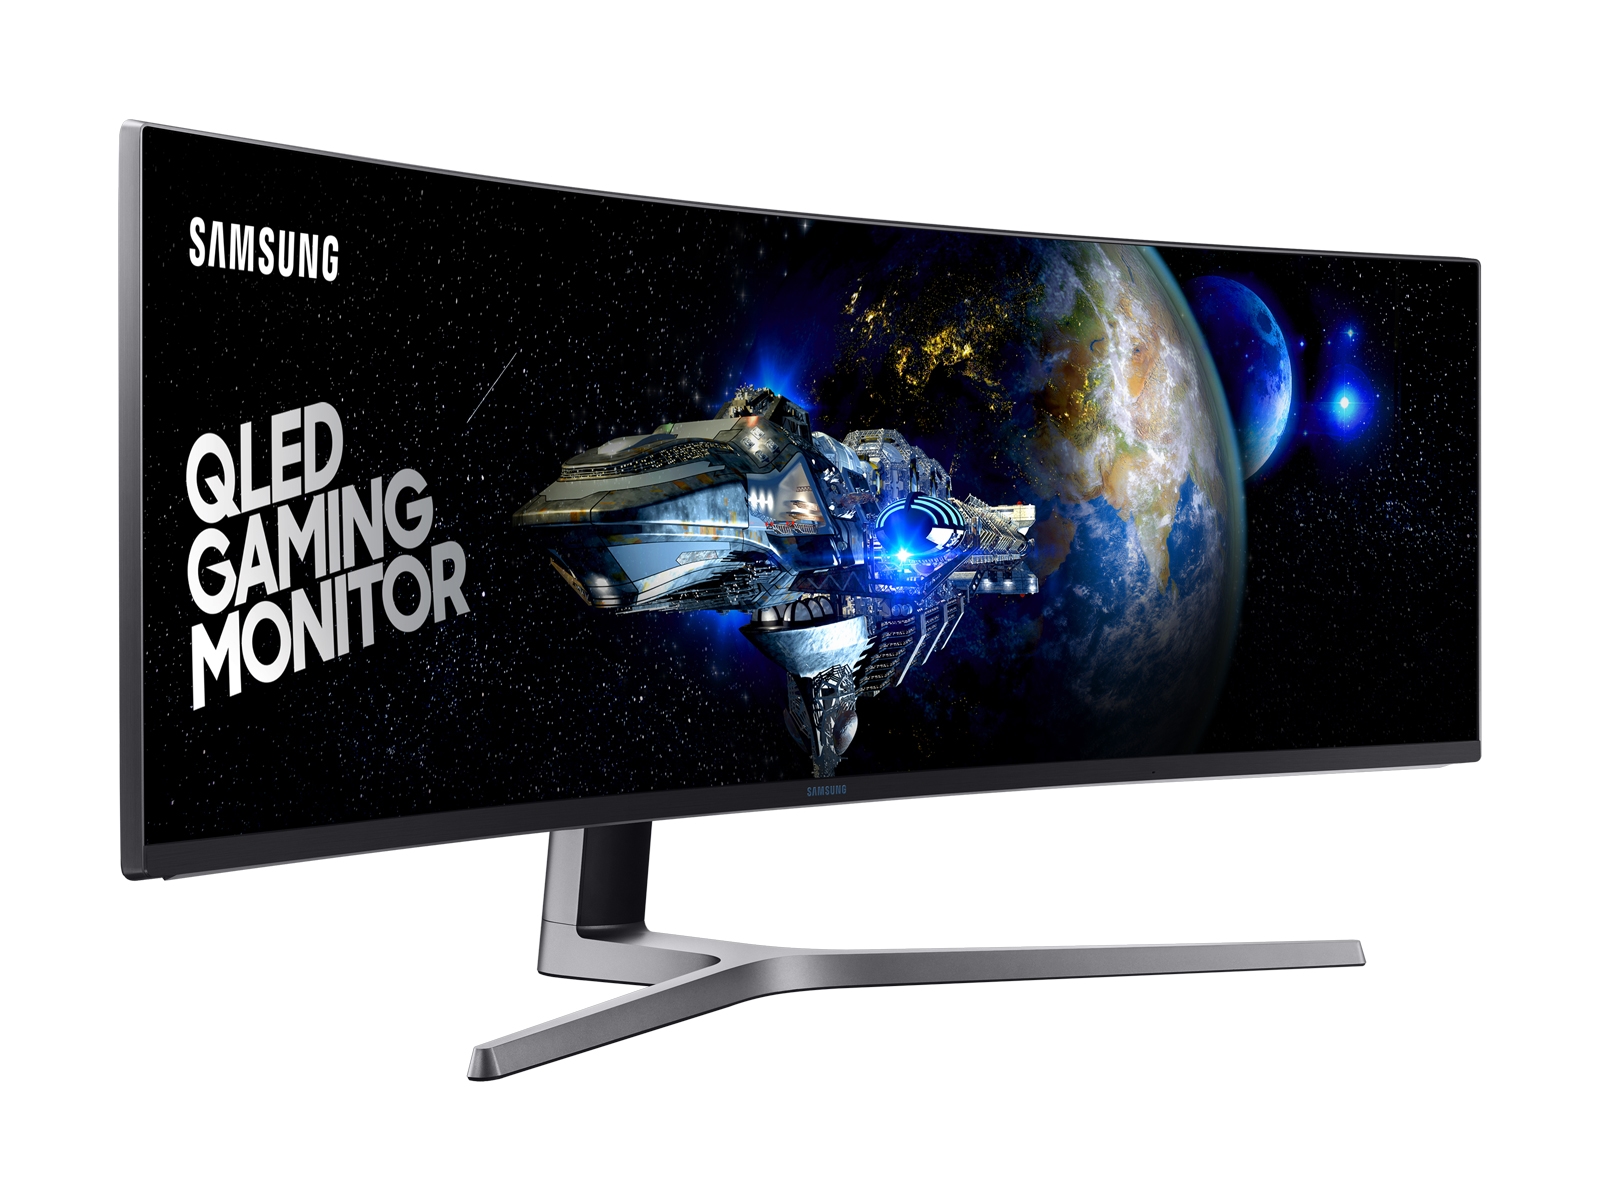 49" CHG90 QLED Gaming Monitor Monitors - LC49HG90DMNXZA | Samsung US